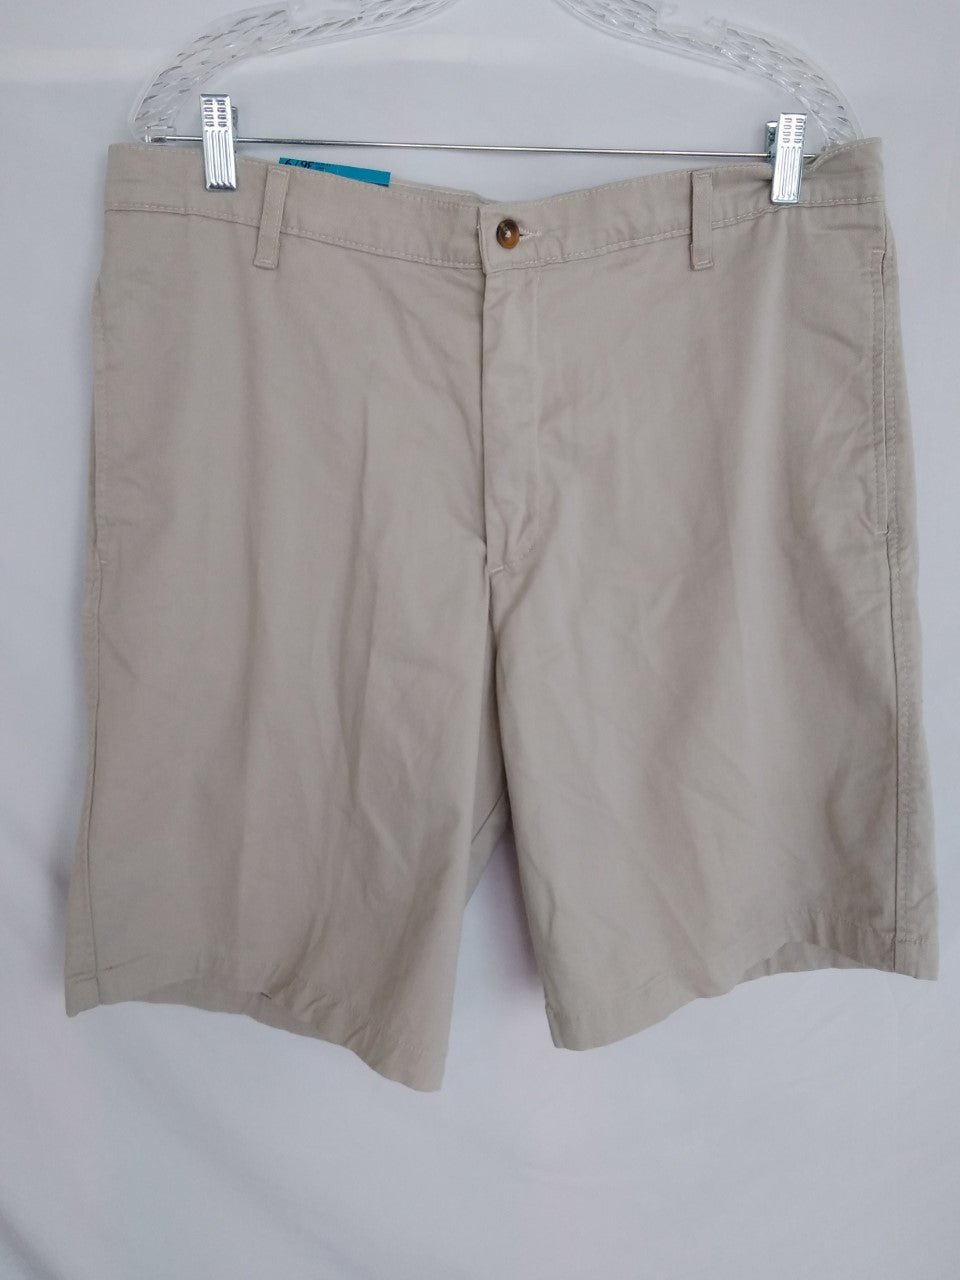 Saddlebred Men's Shorts - Size 36